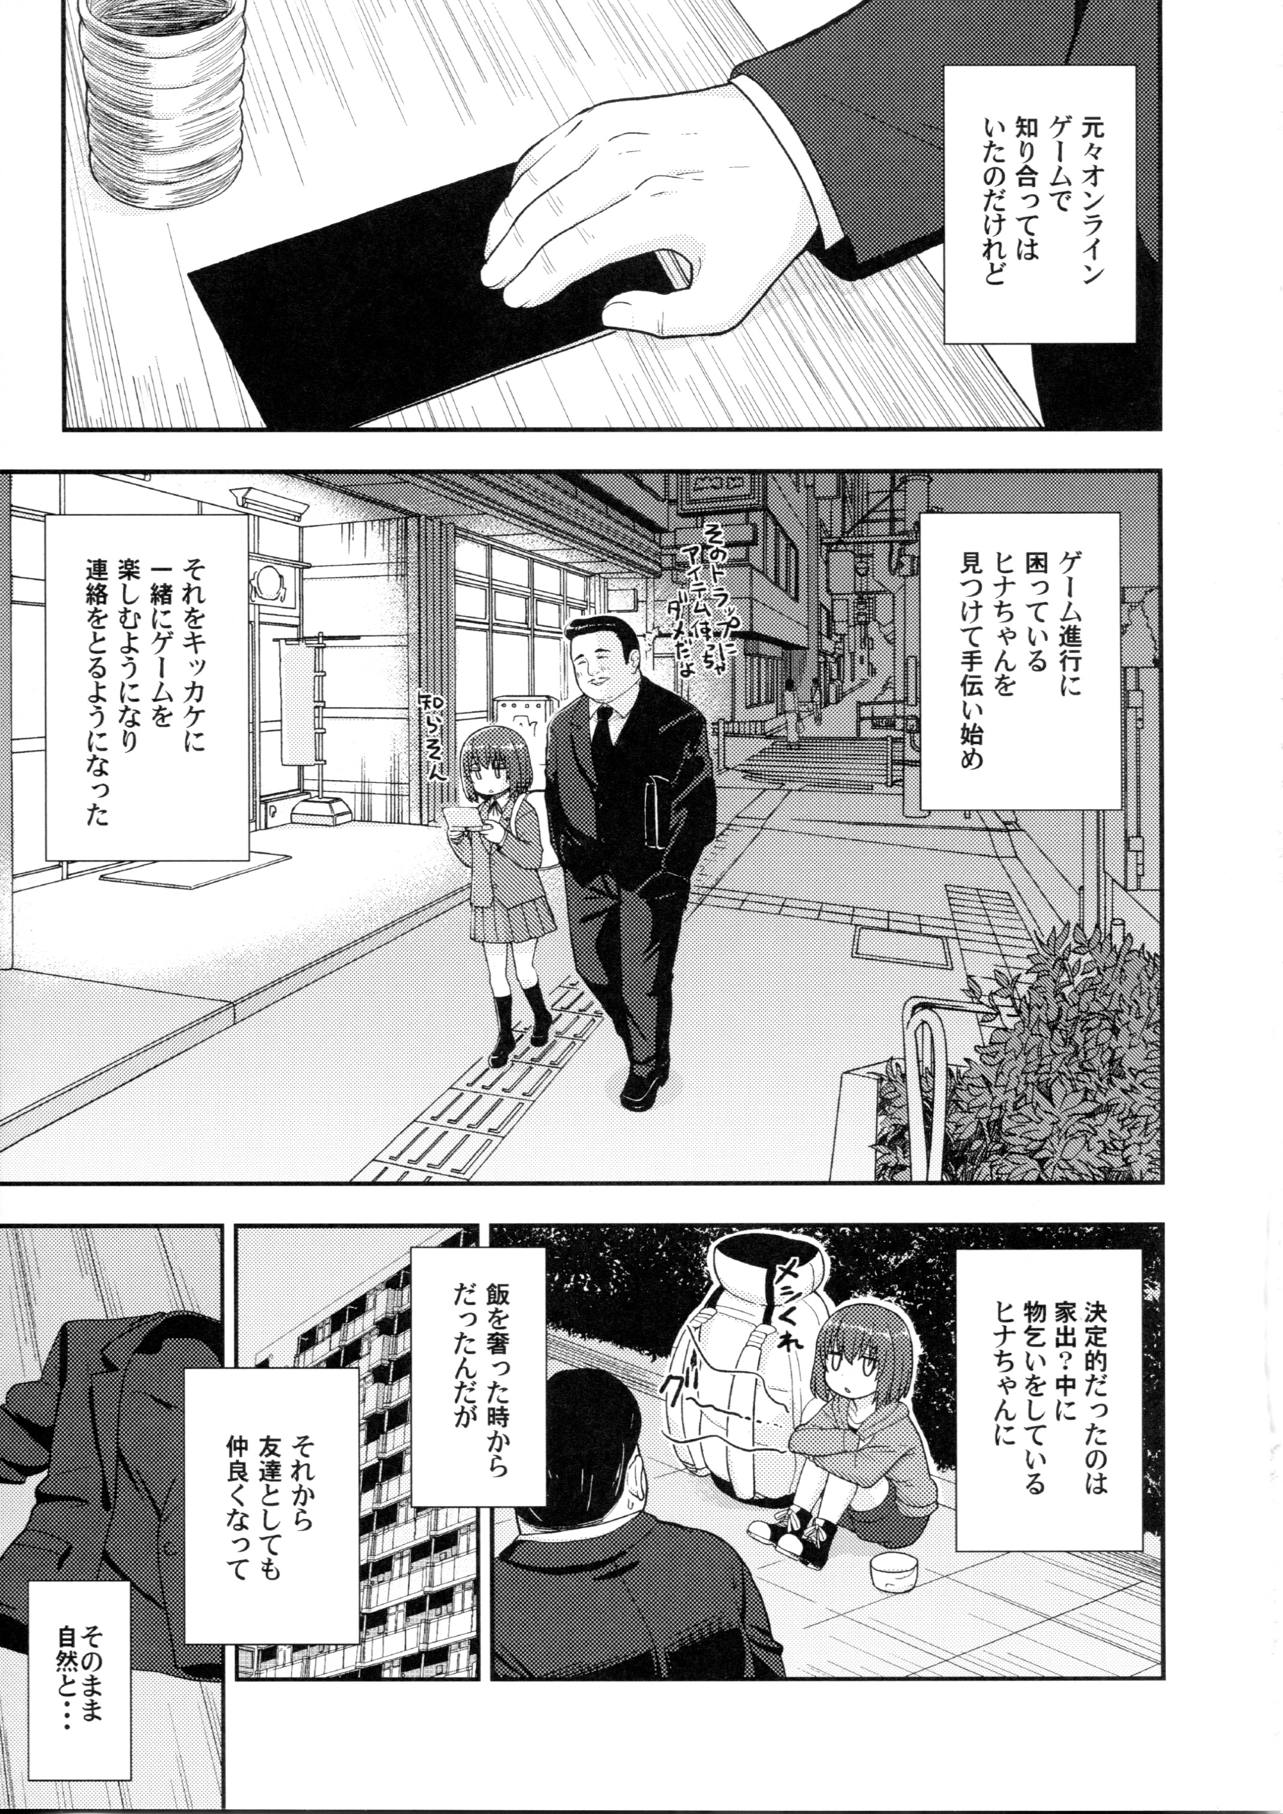 【ヒナまつり】女子中学生のヒナちゃんが新田に内緒でおじさんと援助交際するなんて…。の画像4枚目